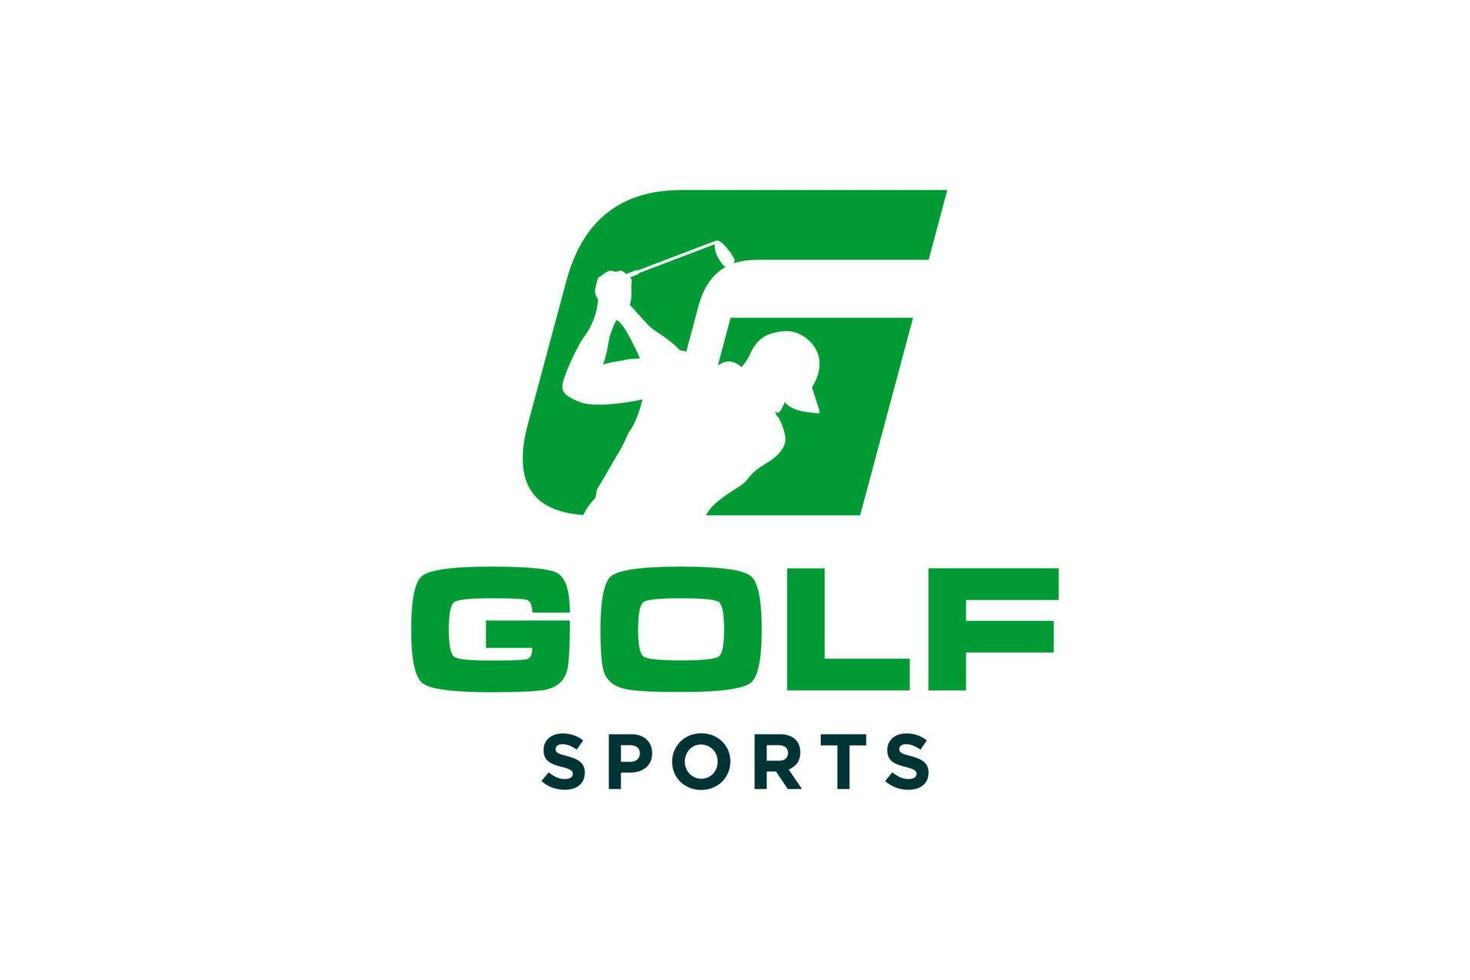 alfabet letter pictogram logo g voor golf logo vector ontwerpsjabloon, vector label van golf, logo van golfkampioenschap, illustratie, creatief pictogram, ontwerpconcept